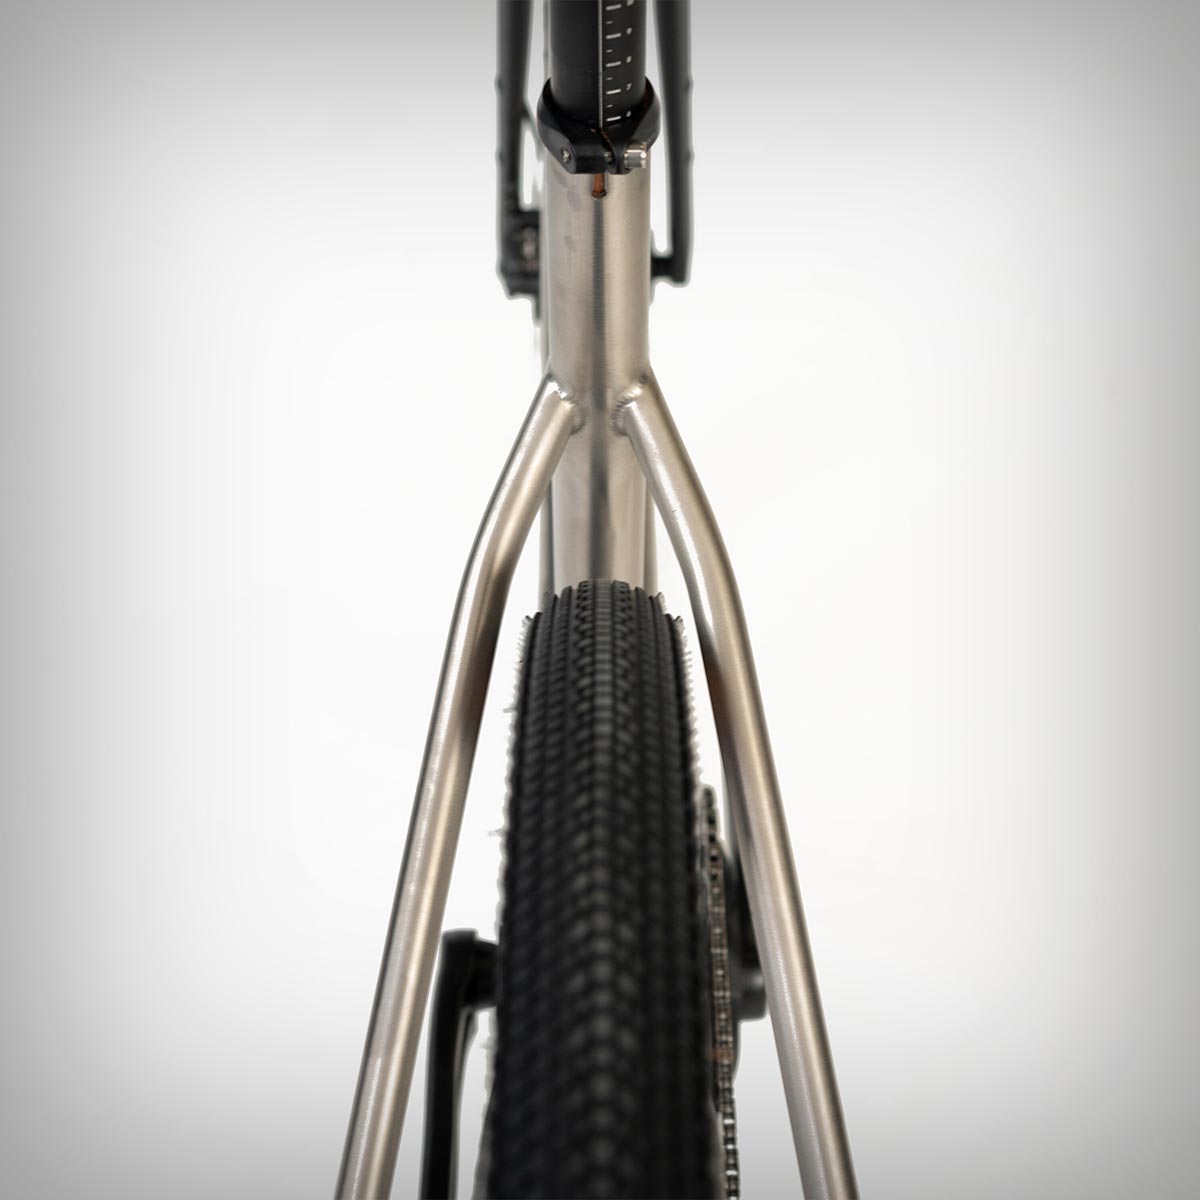 Triban GRVL 900 TI, una bicicleta de gravel con cuadro de titanio y la geometría más cómoda